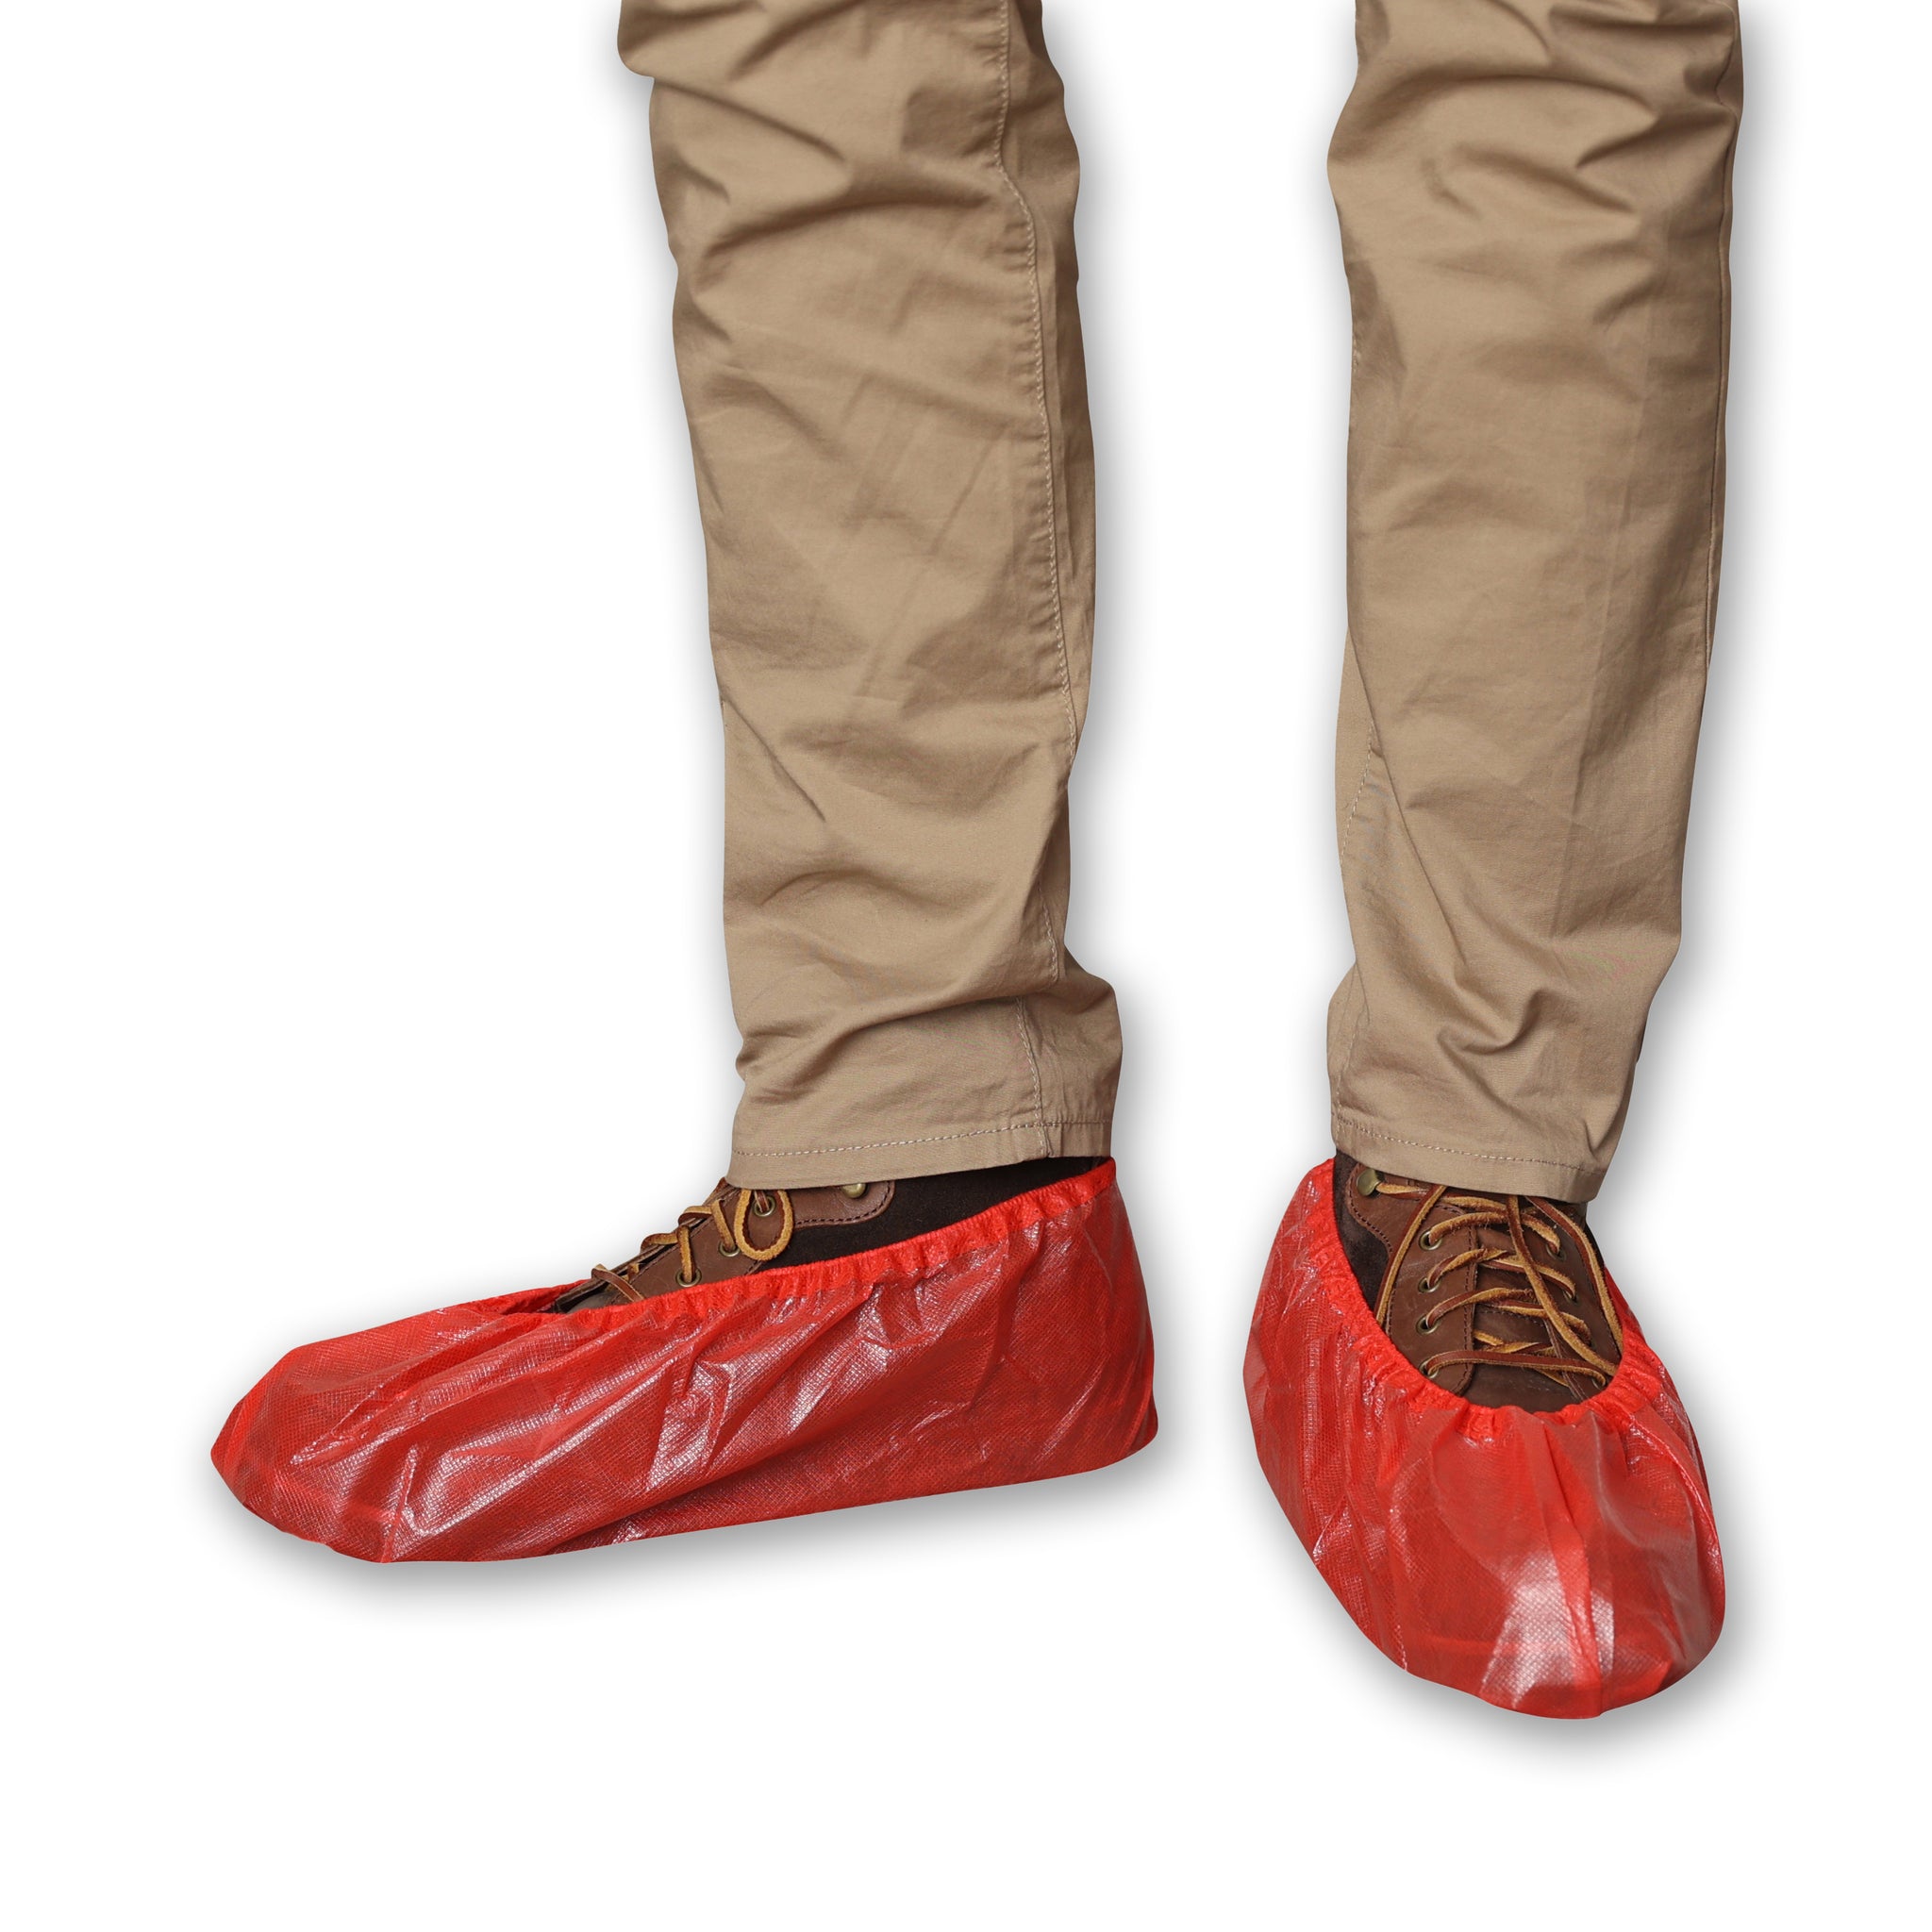 BB5L34 Red Spunbond Polypropylene Coated Shoe Cover